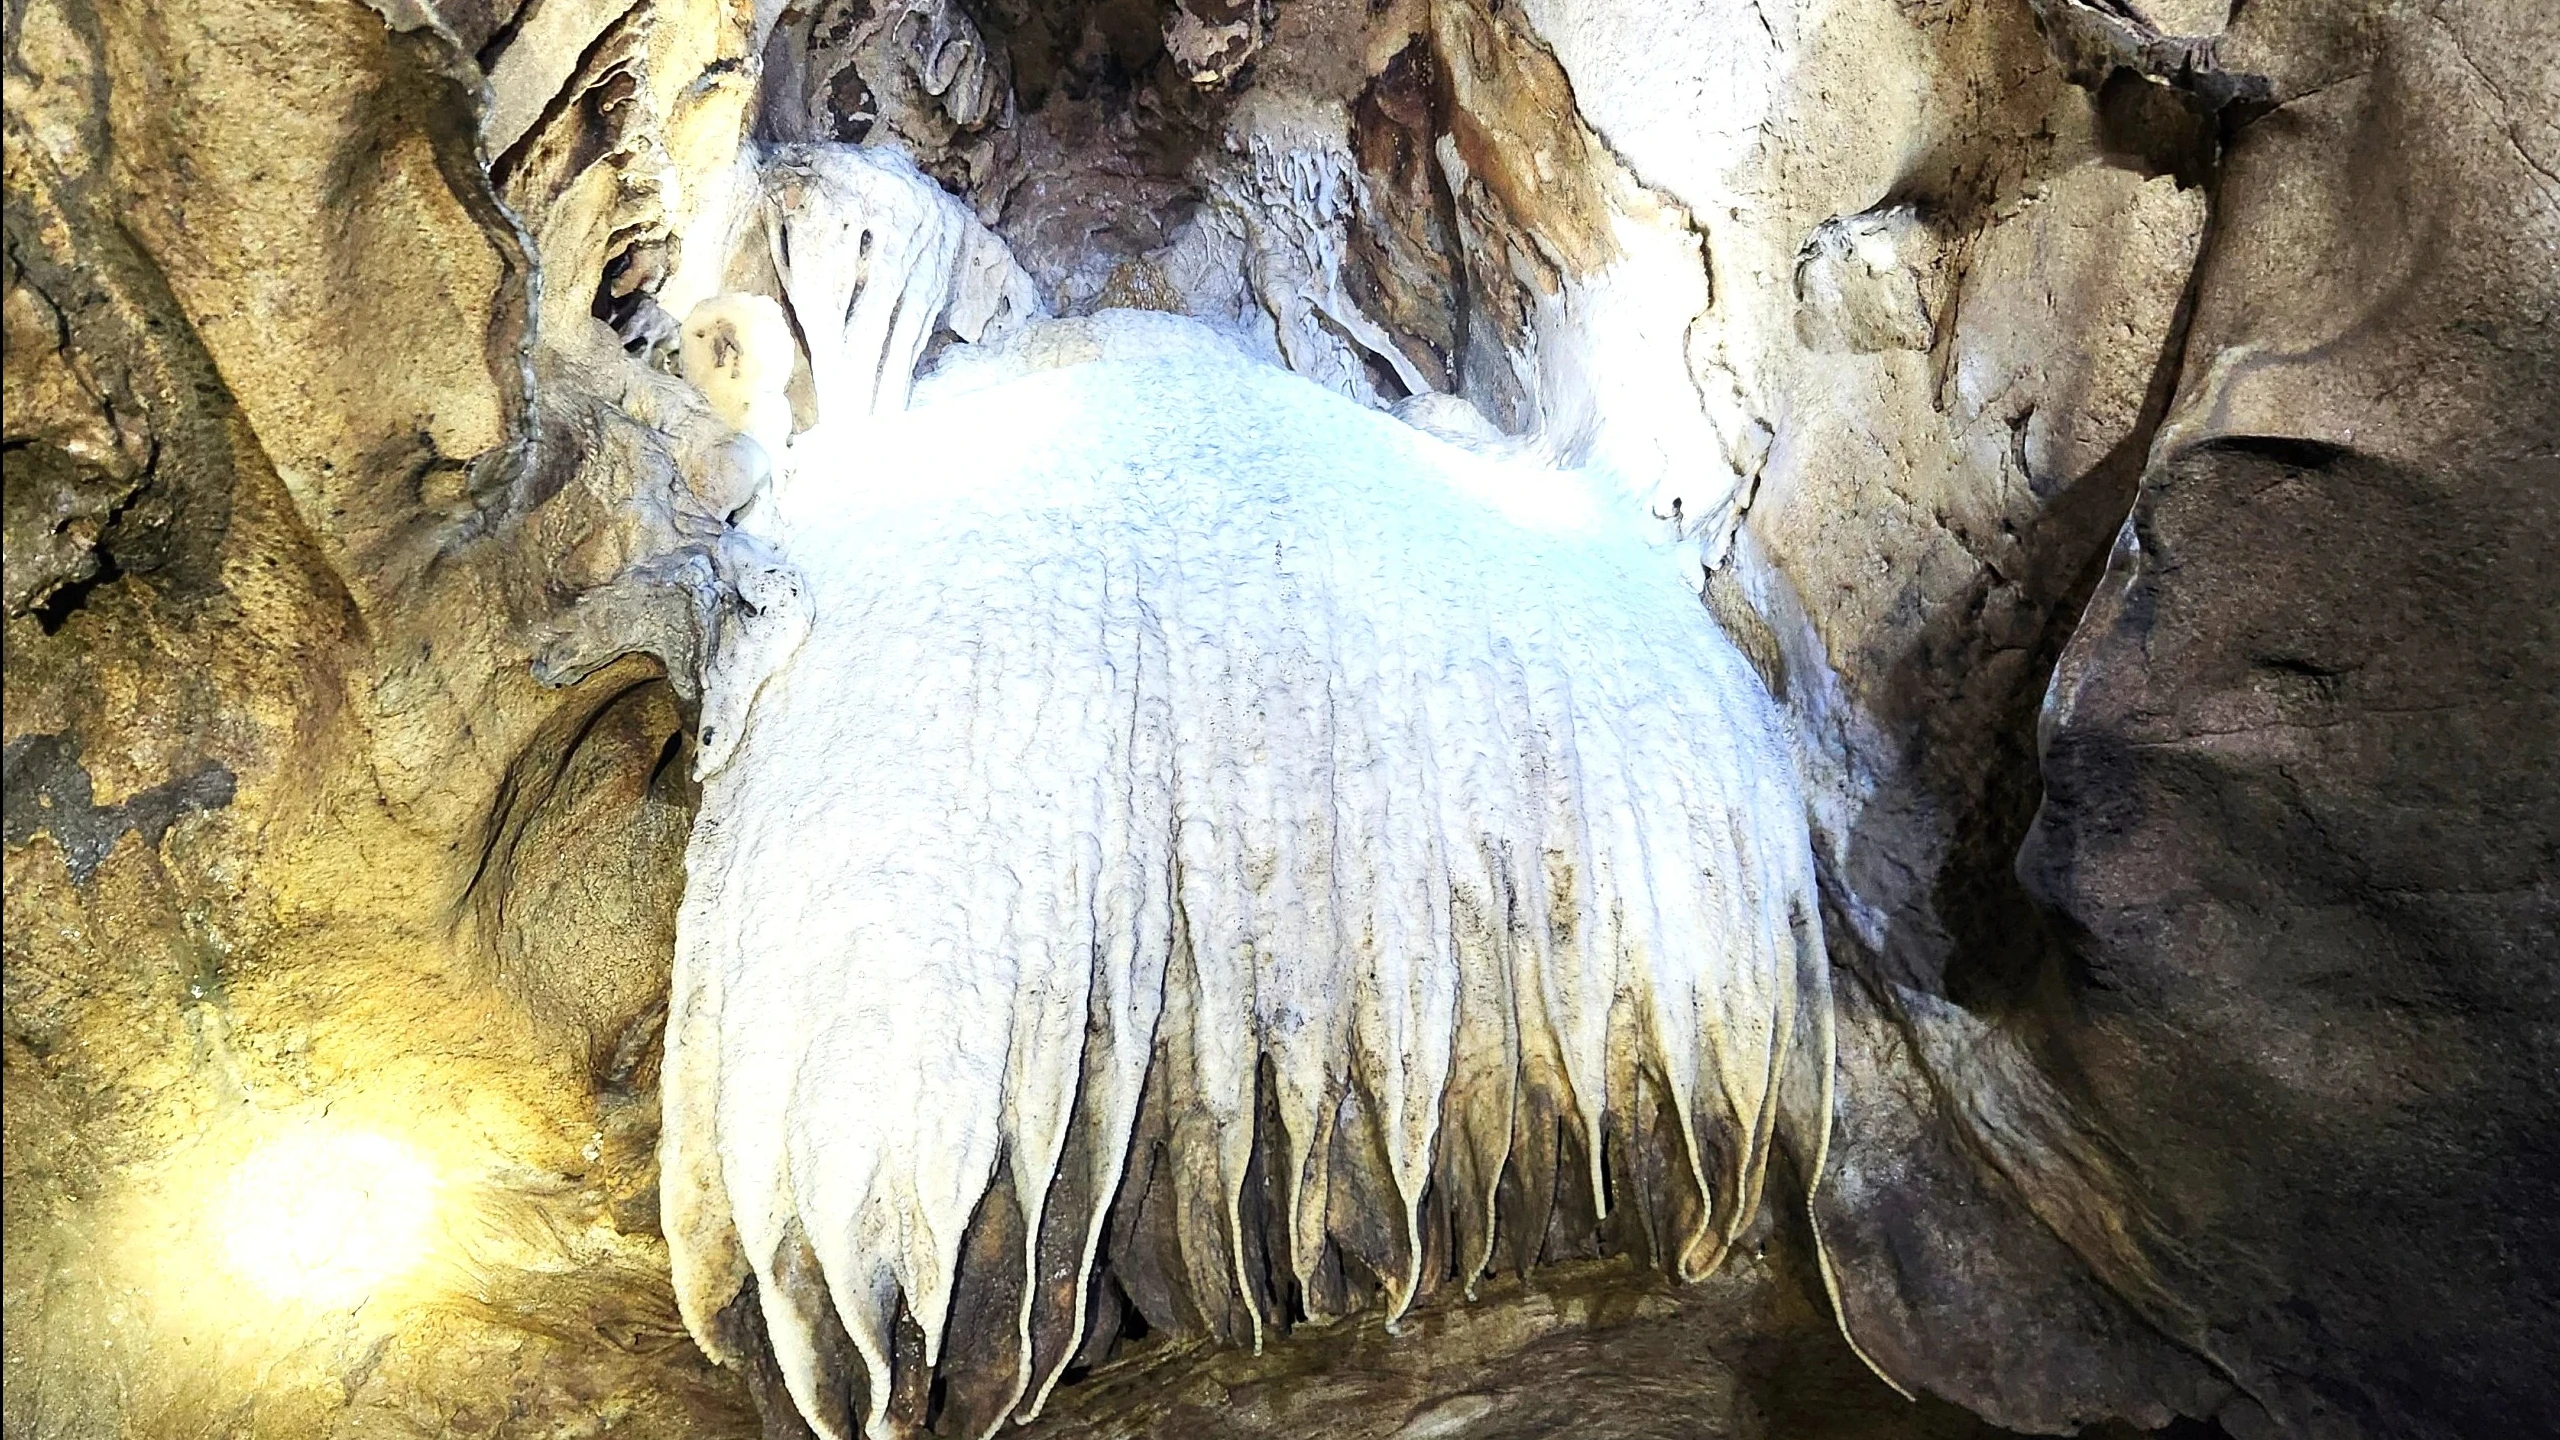 Phát lộ hang động đẹp lung linh ở Thanh Hóa